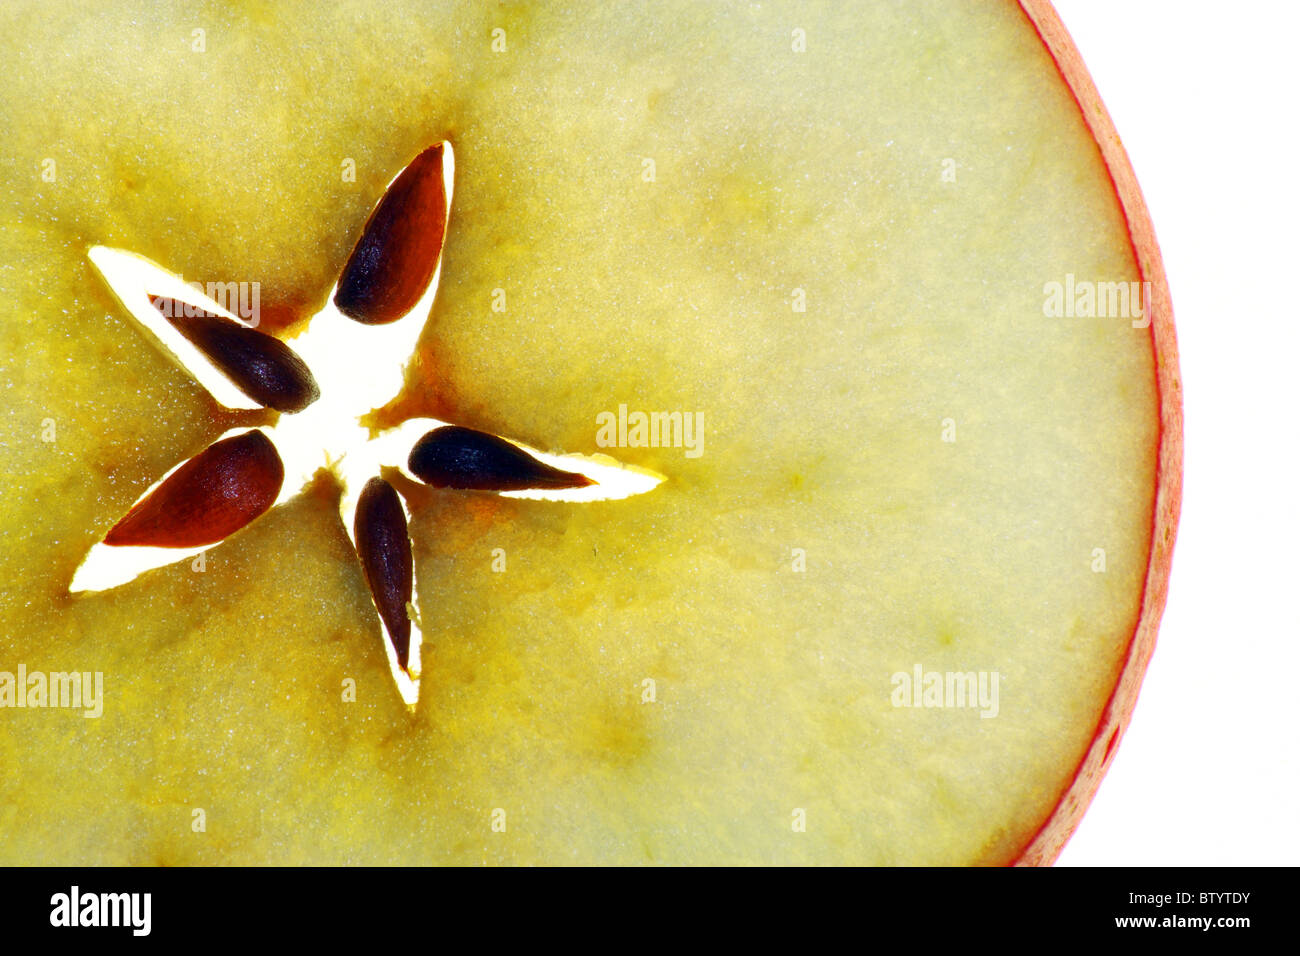 Durchscheinende Scheibe des Apfels Stockfoto